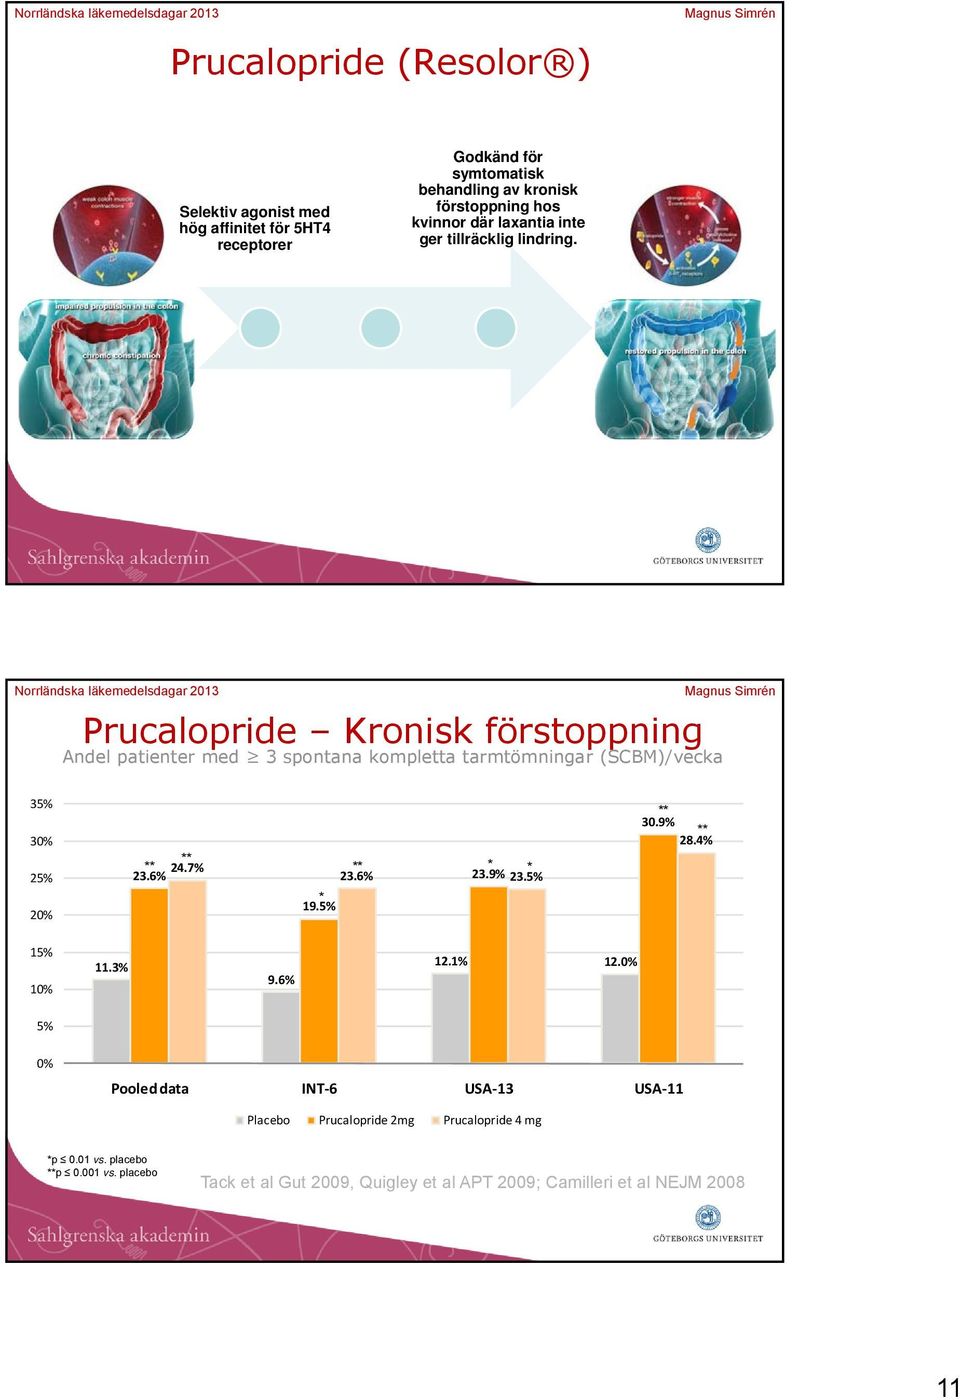 Prucalopride Kronisk förstoppning Andel patienter med 3 spontana kompletta tarmtömningar (SCBM)/vecka 35% 30% 25% 20% 24.7% 23.6% * 23.6% 23.9% * 23.